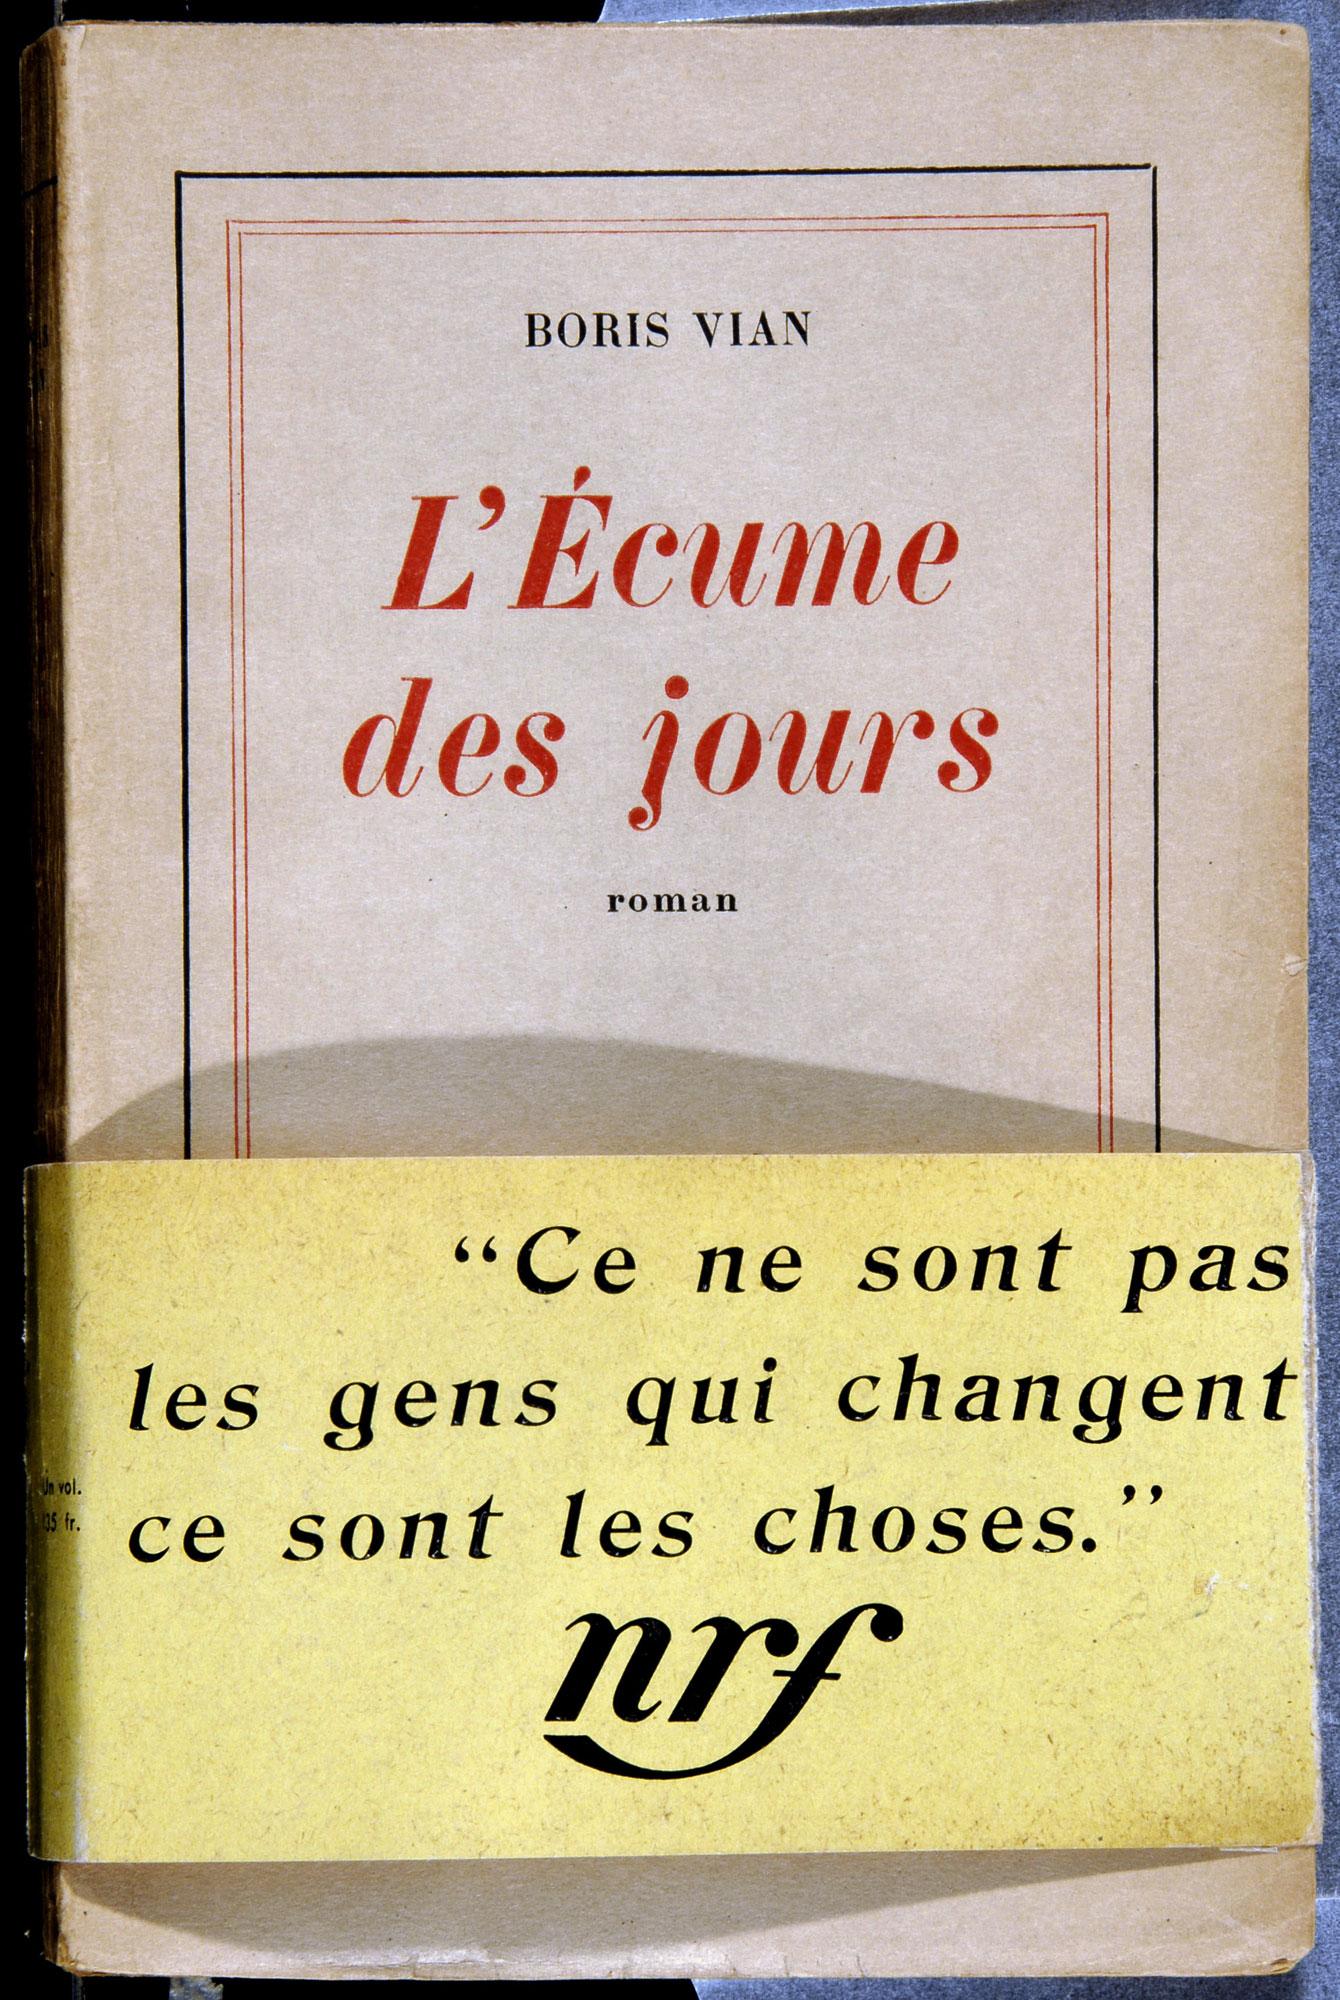 Couverture du livre "L'écume des jours" roman de Boris Vian. [AFP - Editions Gallimard NRF, 1947]